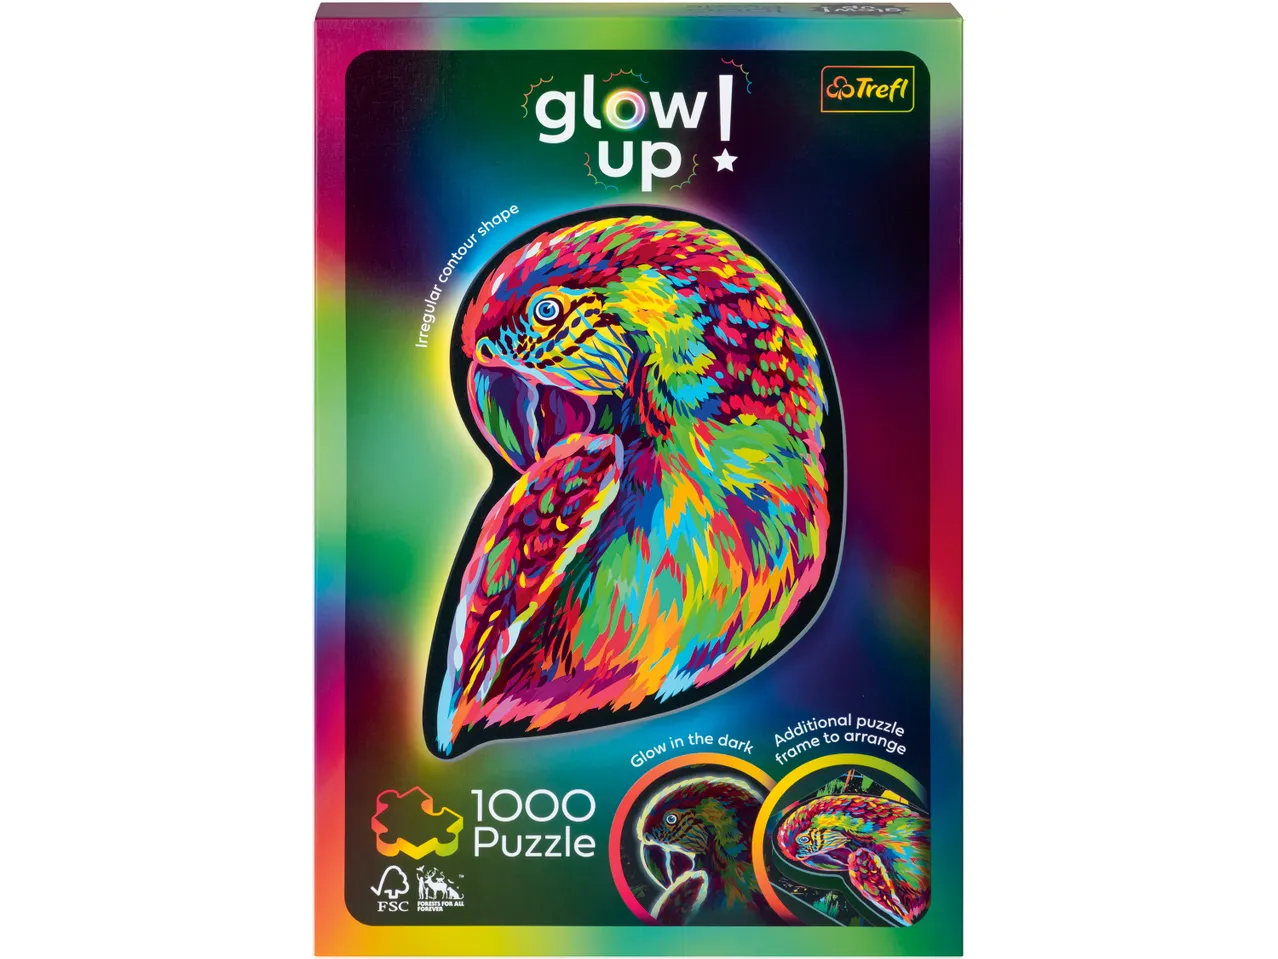 Puzzle fluorescente , prezzo 8.99 EUR 
Puzzle fluorescente 1000 pezzi 
- Si illumina ...